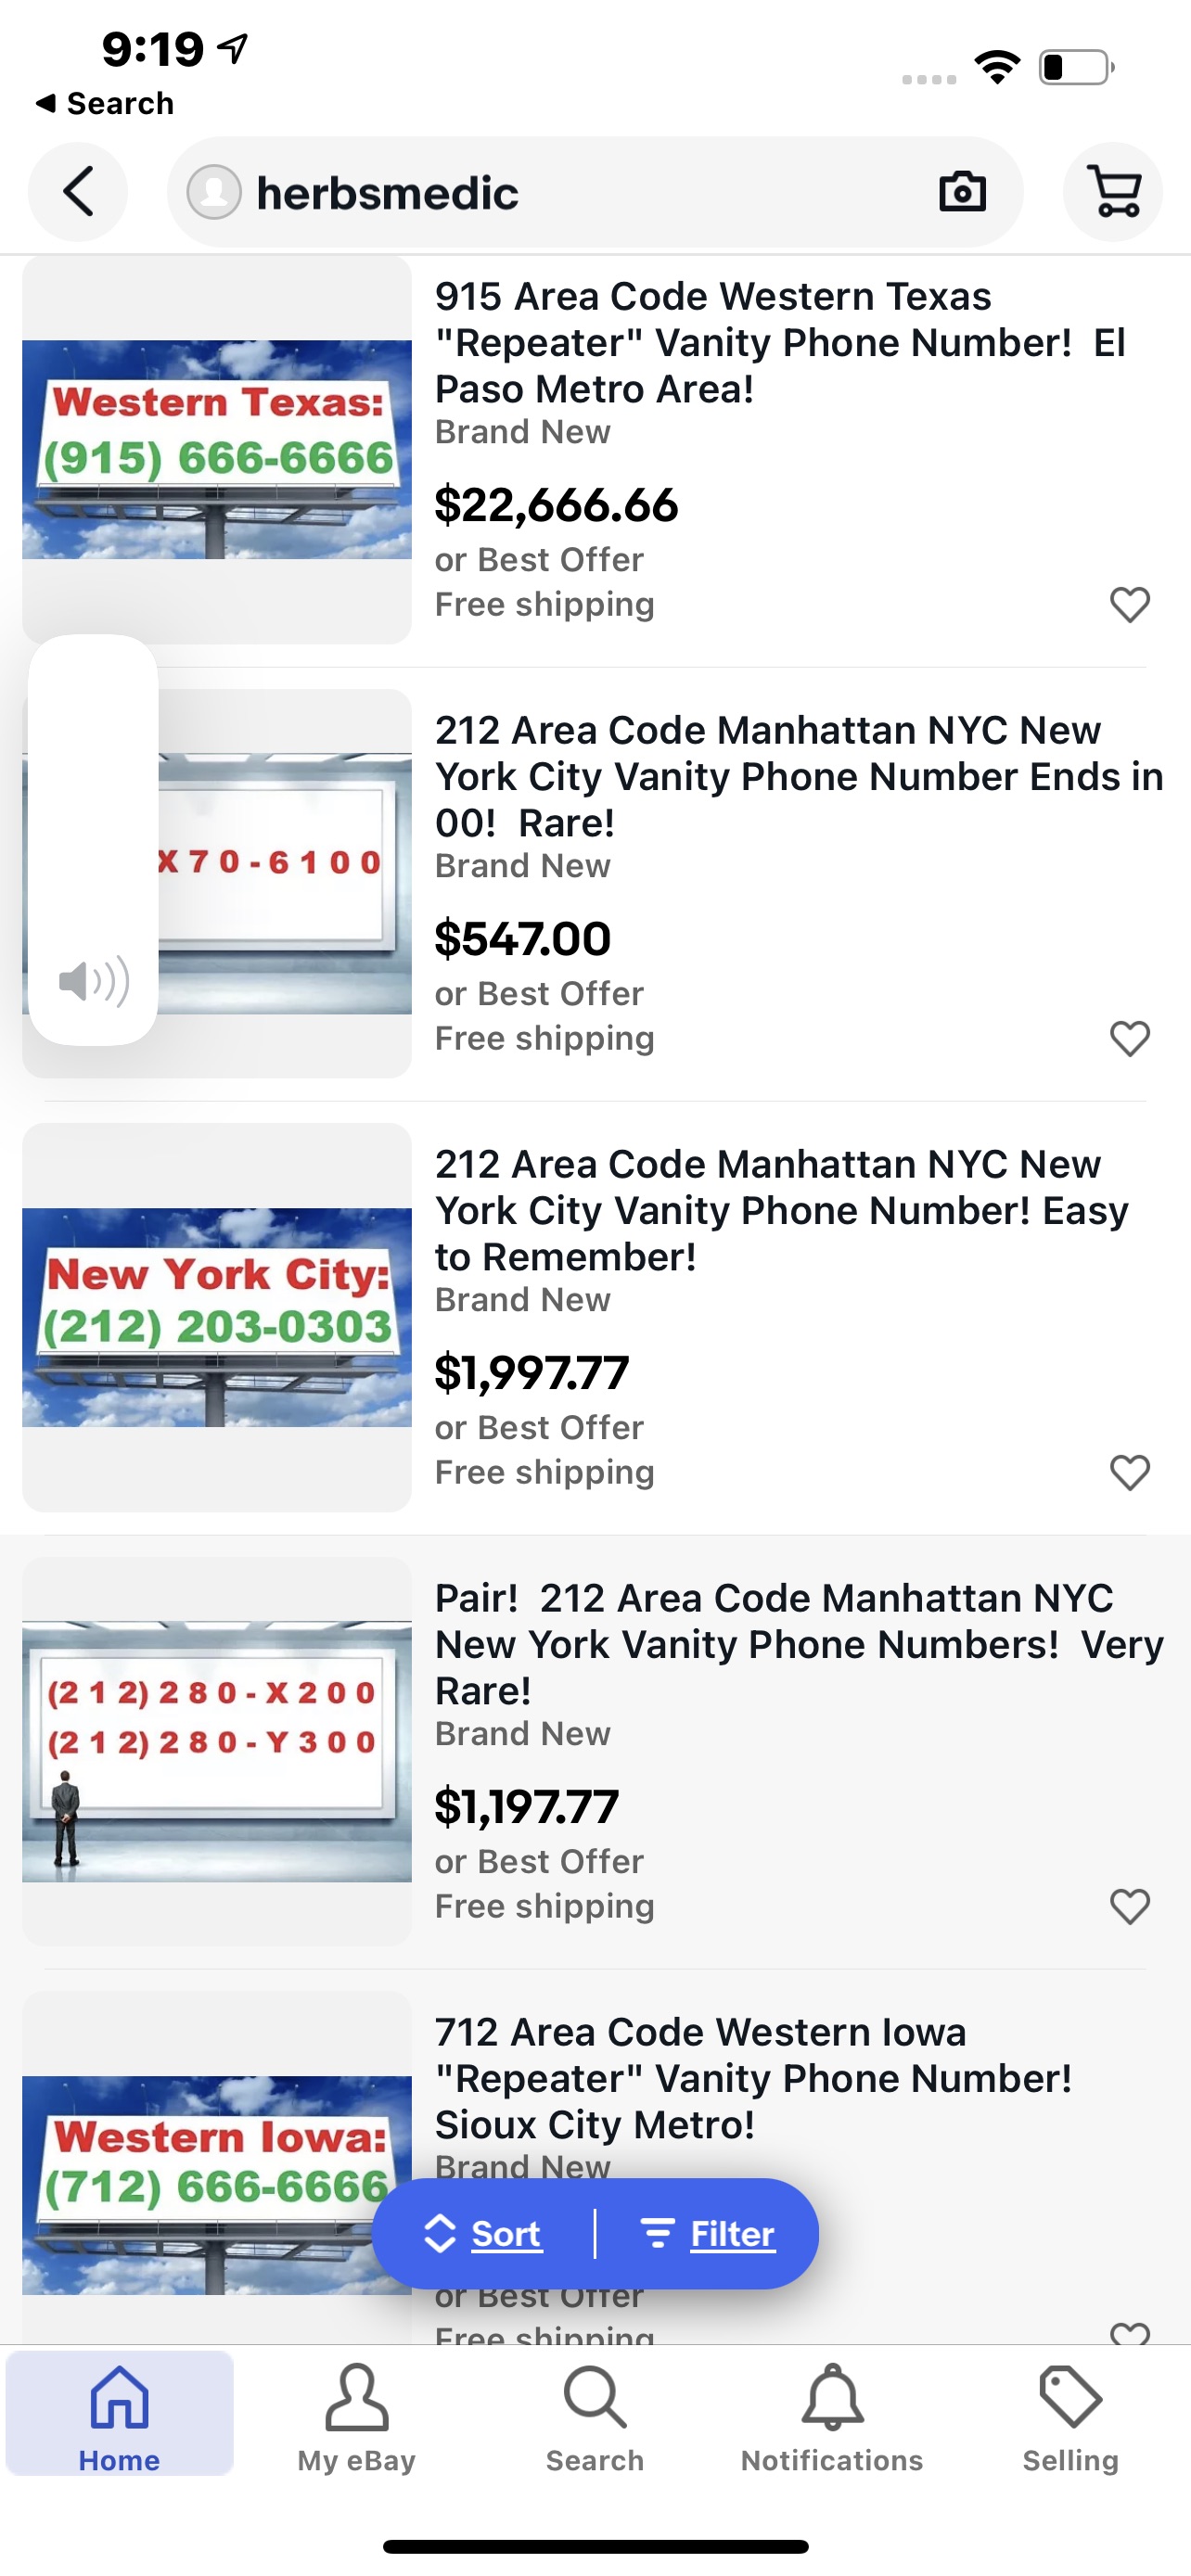 Phone number sale on eBay by Herbsmedic